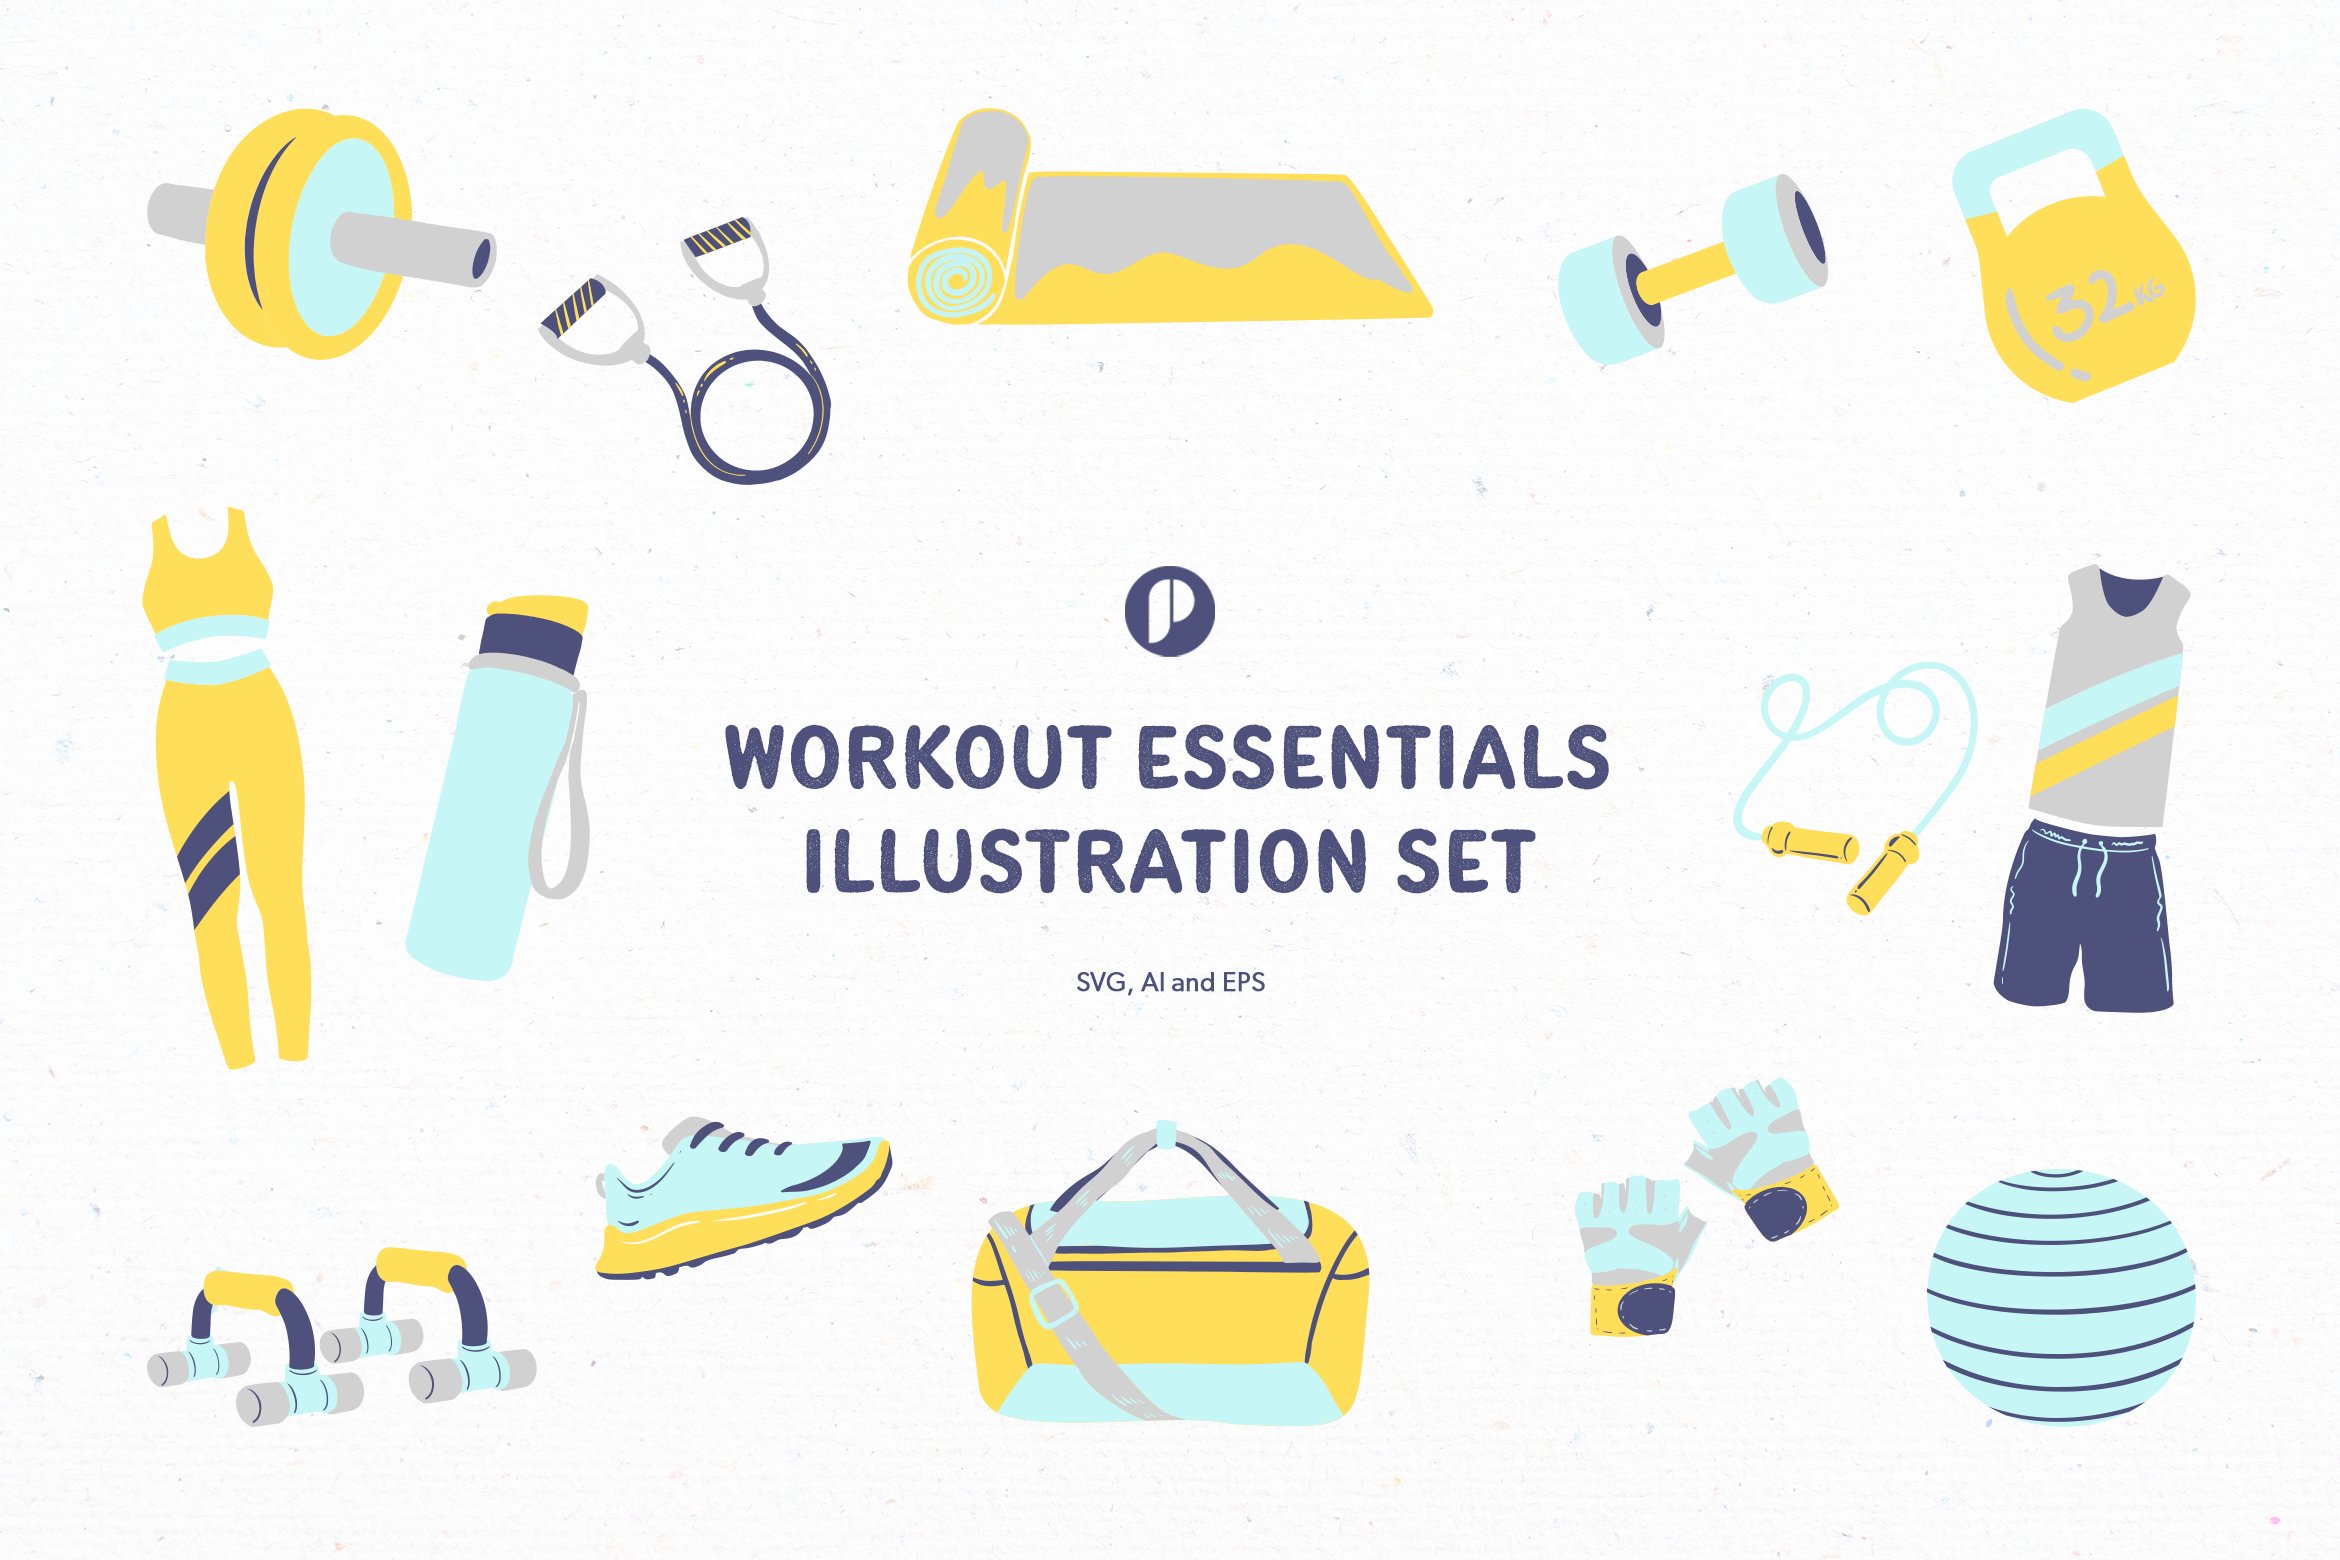 Workout Essentials Illustration Set cover image.